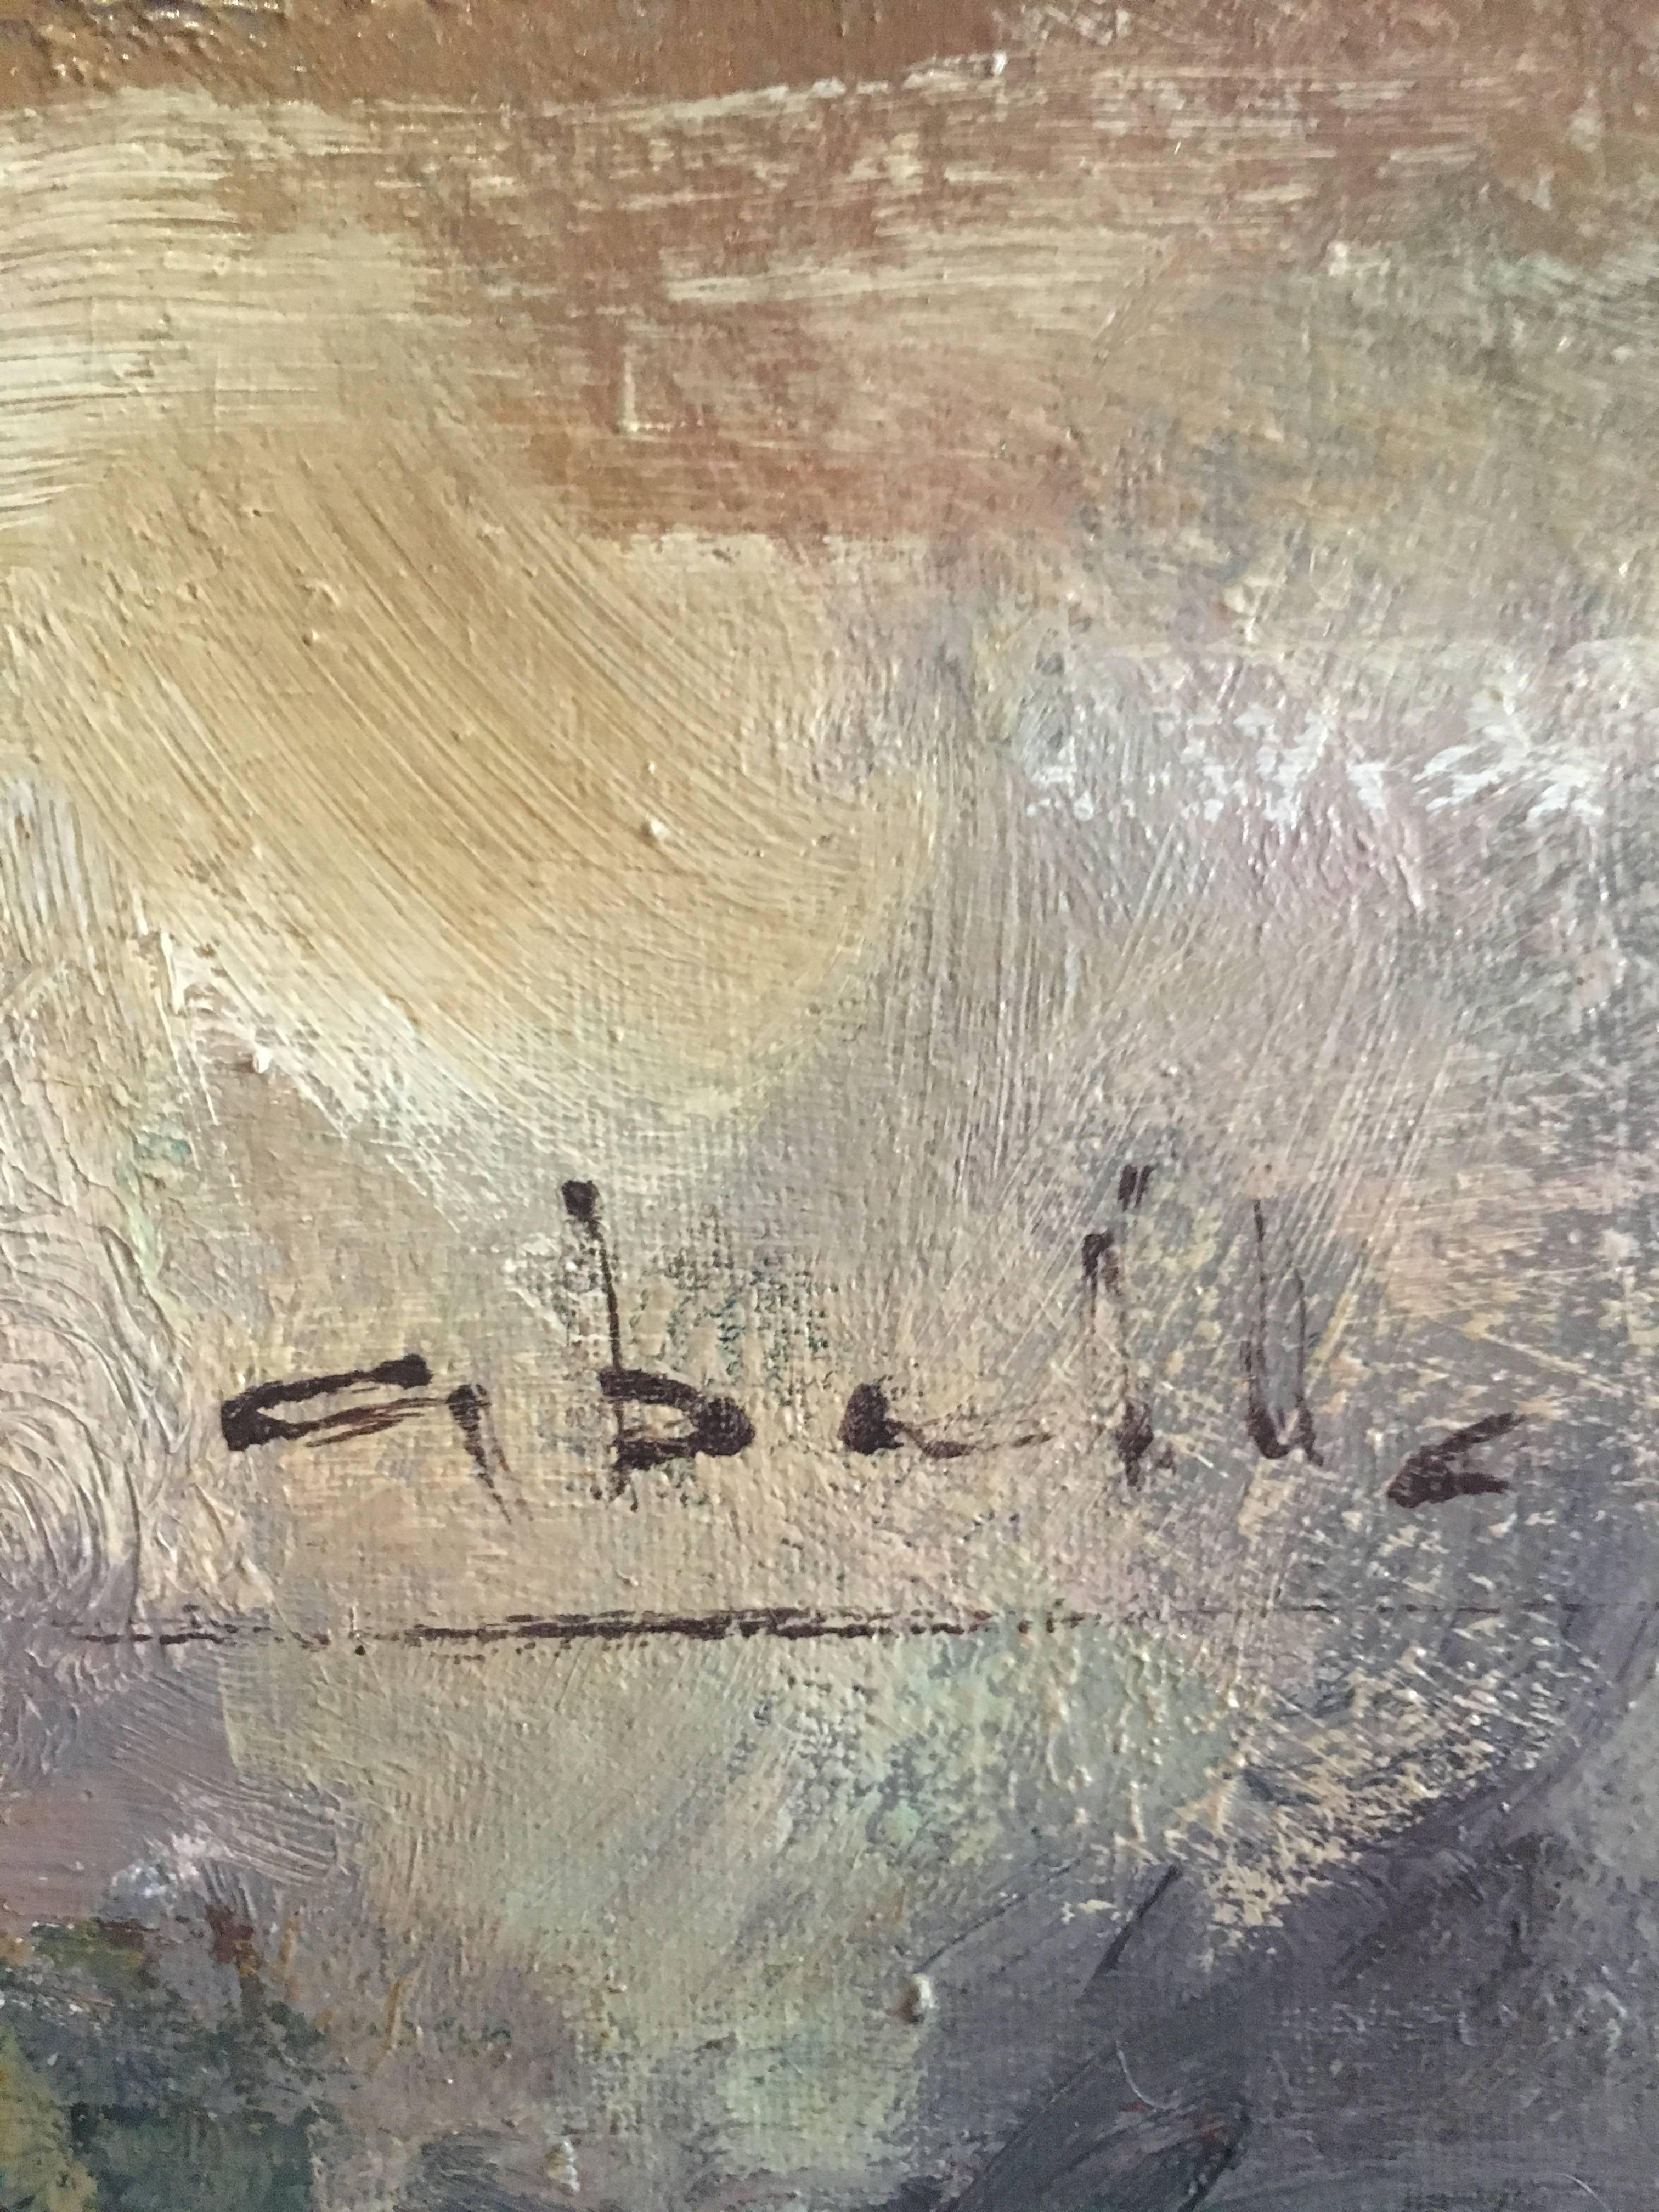 Abella. noch lafe kubistisches Original  Acryl-Leinwand-Gemälde
Juan Jose Abella Rubio wurde im März 1944 in Estercuel, einem Weiler im Bergbaubecken von Teruel, geboren. In seiner Malerei sind die ockerfarbenen und rötlichen Farben seiner ersten